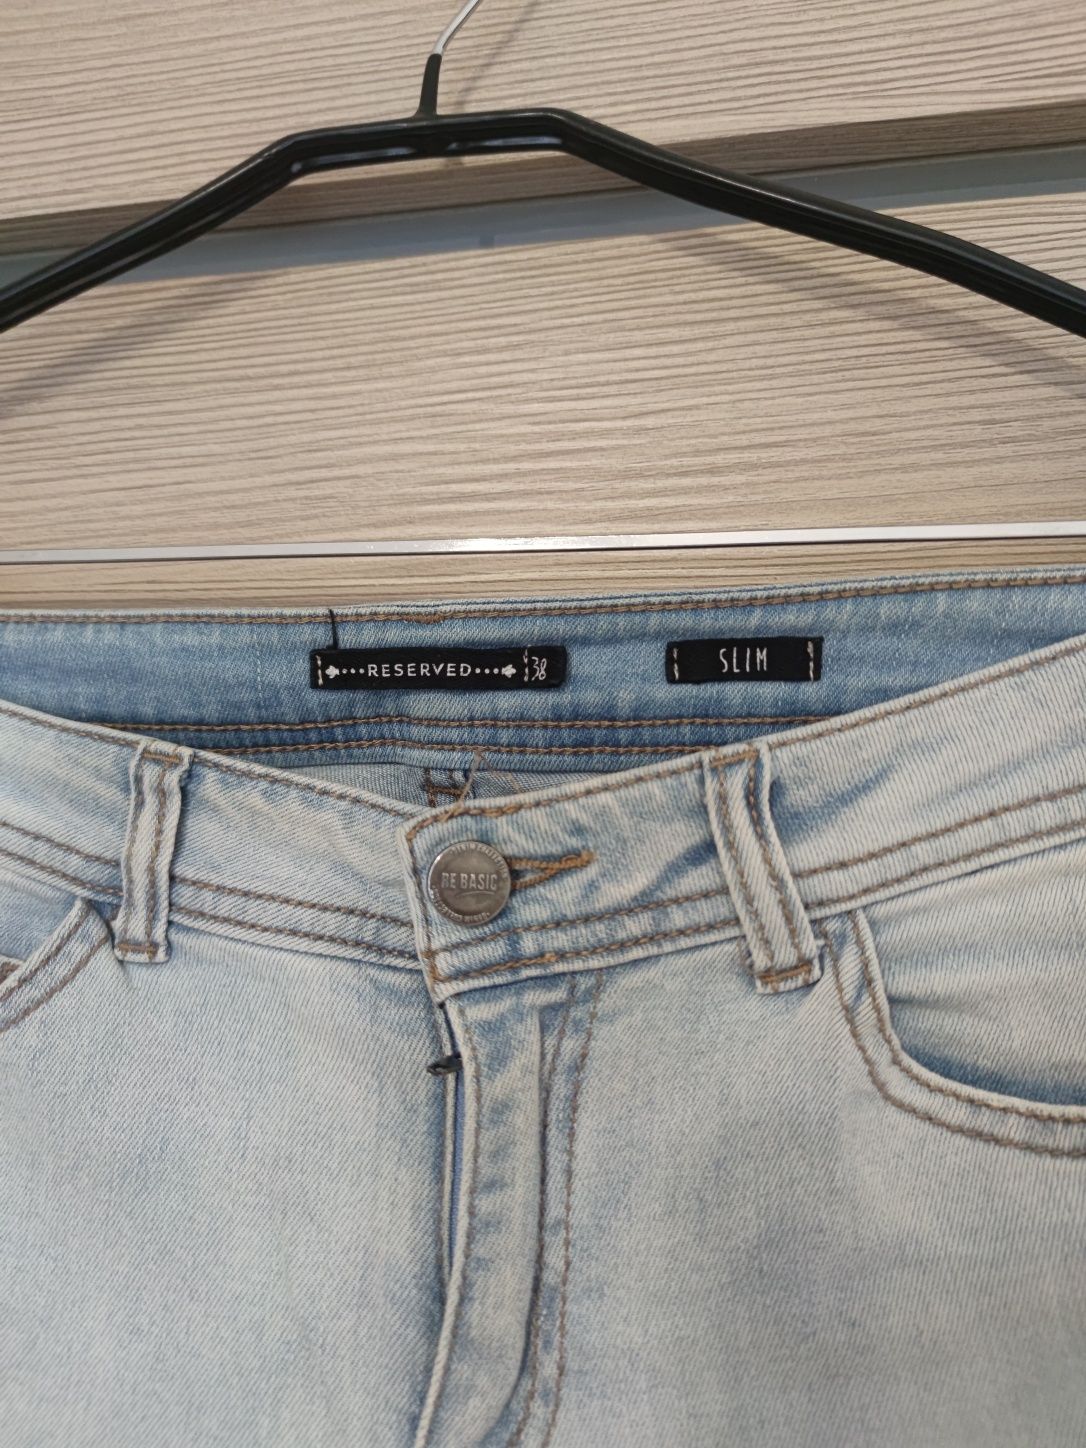 Jasne jeansy spodnie dżinsowe SLIM wysoki stan 38 M Reserved